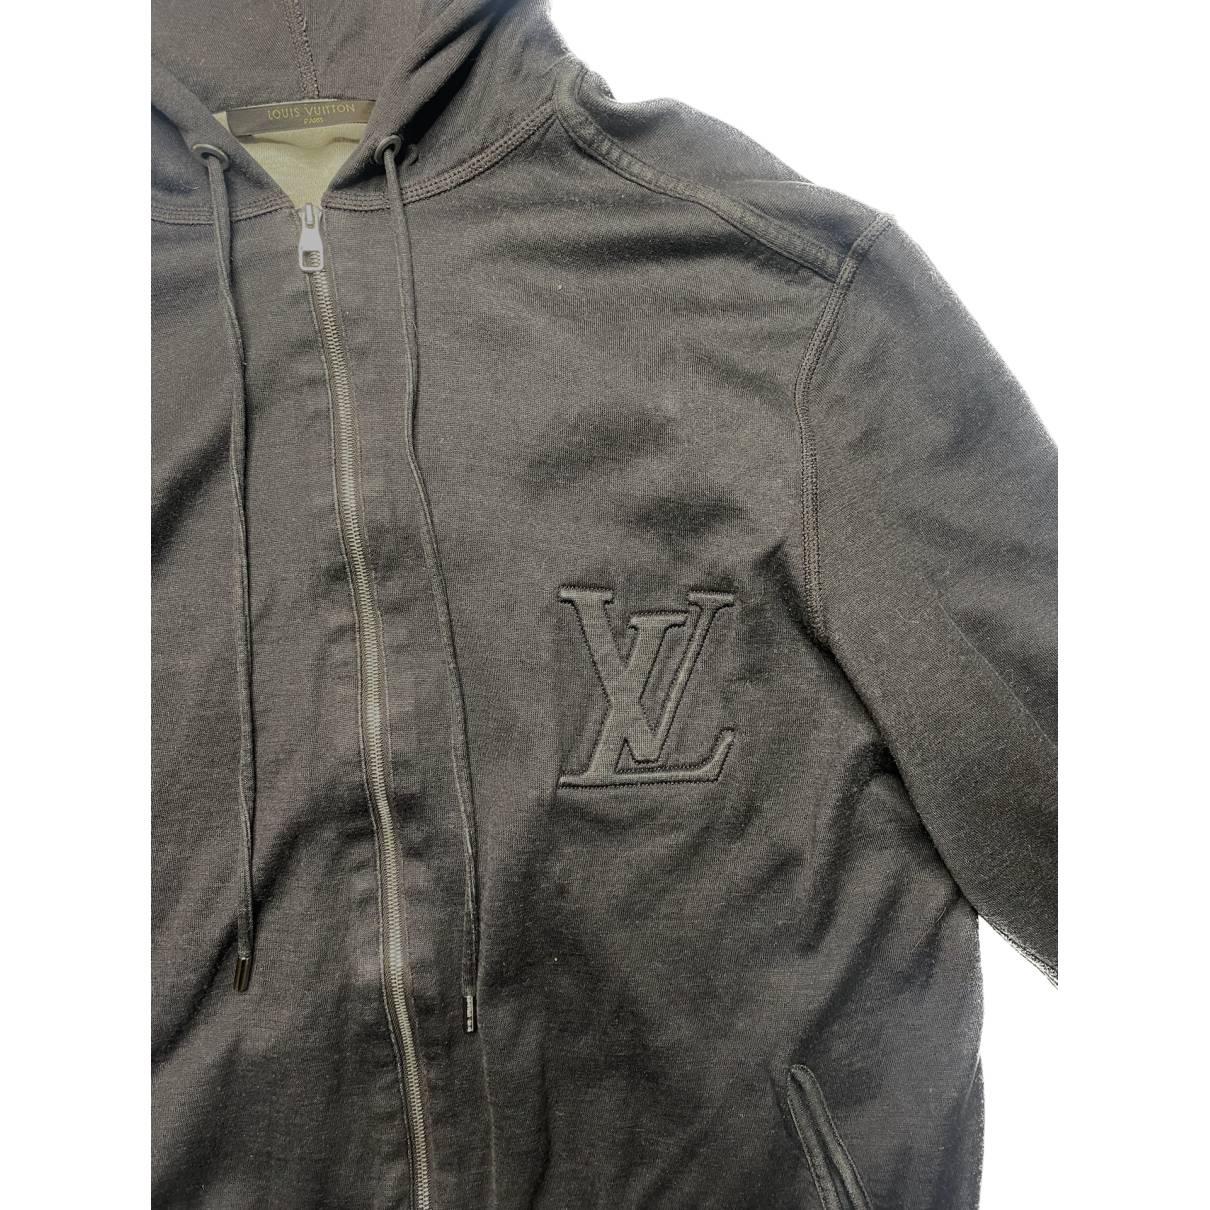 Sweatshirt Louis Vuitton Brown size M International in Cotton